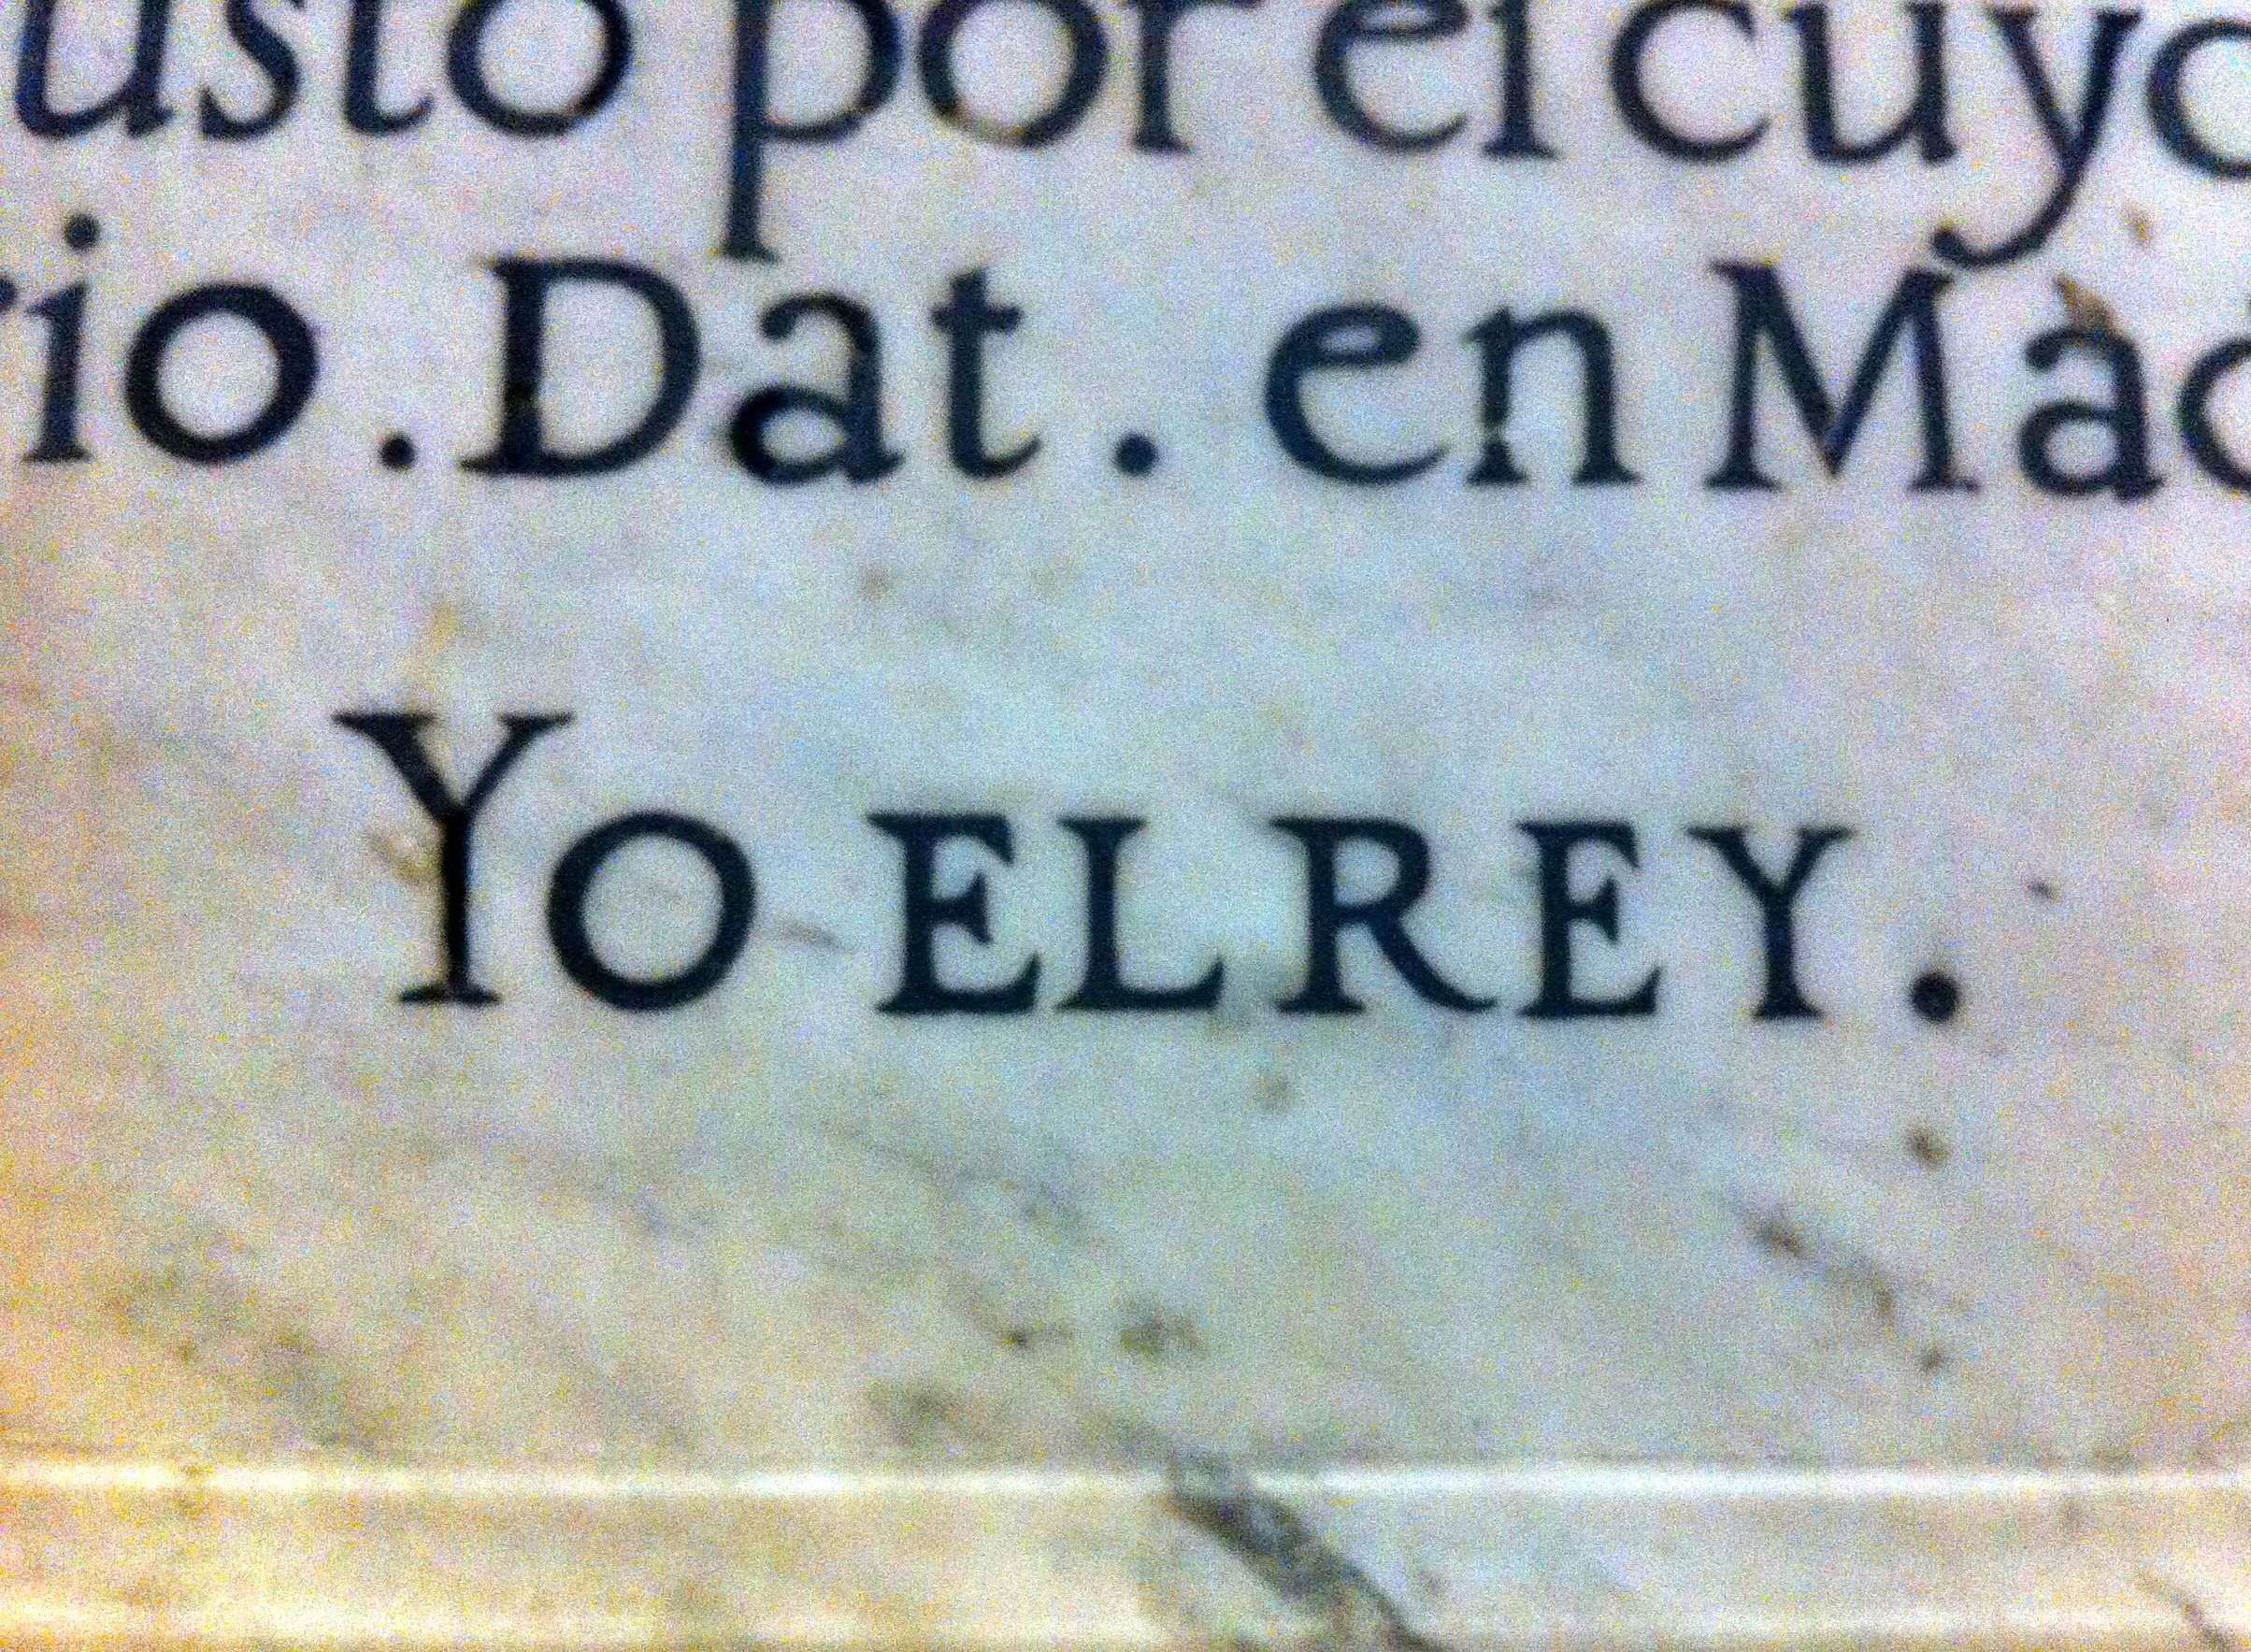 ElRey